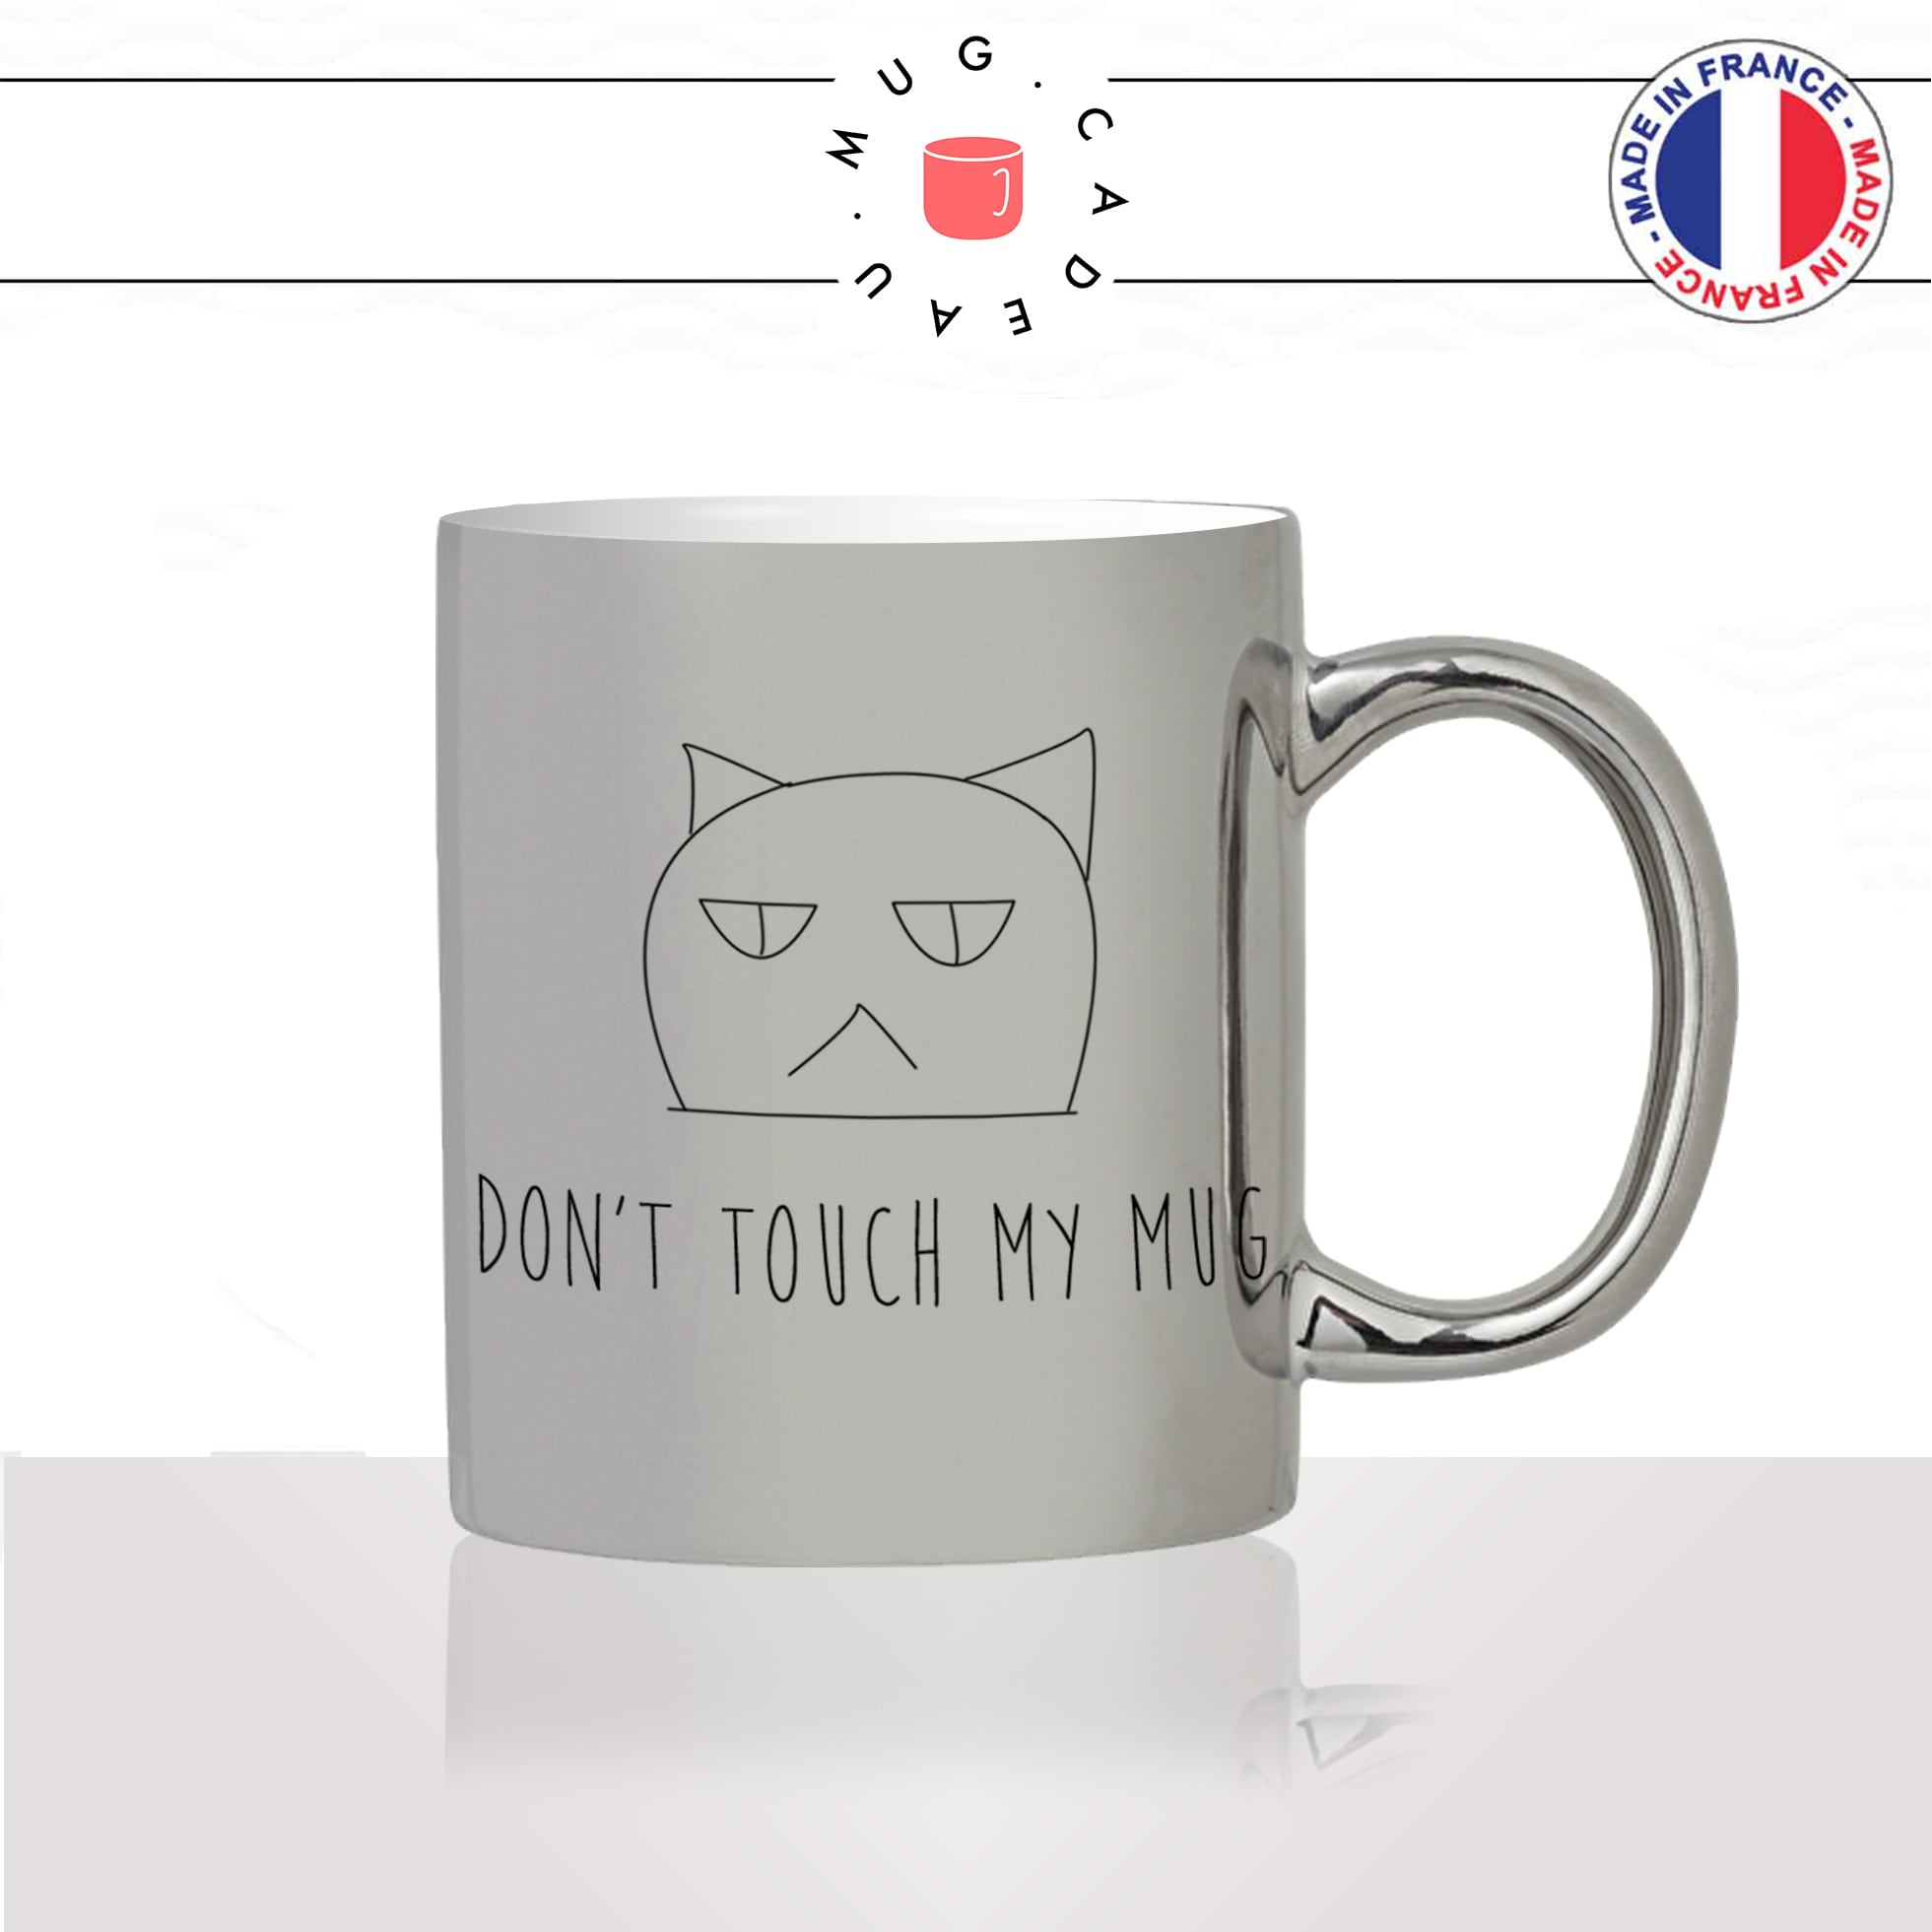 mug-tasse-argenté-silver-tete-de-chat-dont-touch-my-pas-toucher-mignon-animal-chaton-noir-fun-café-thé-idée-cadeau-original-personnalisé2-min